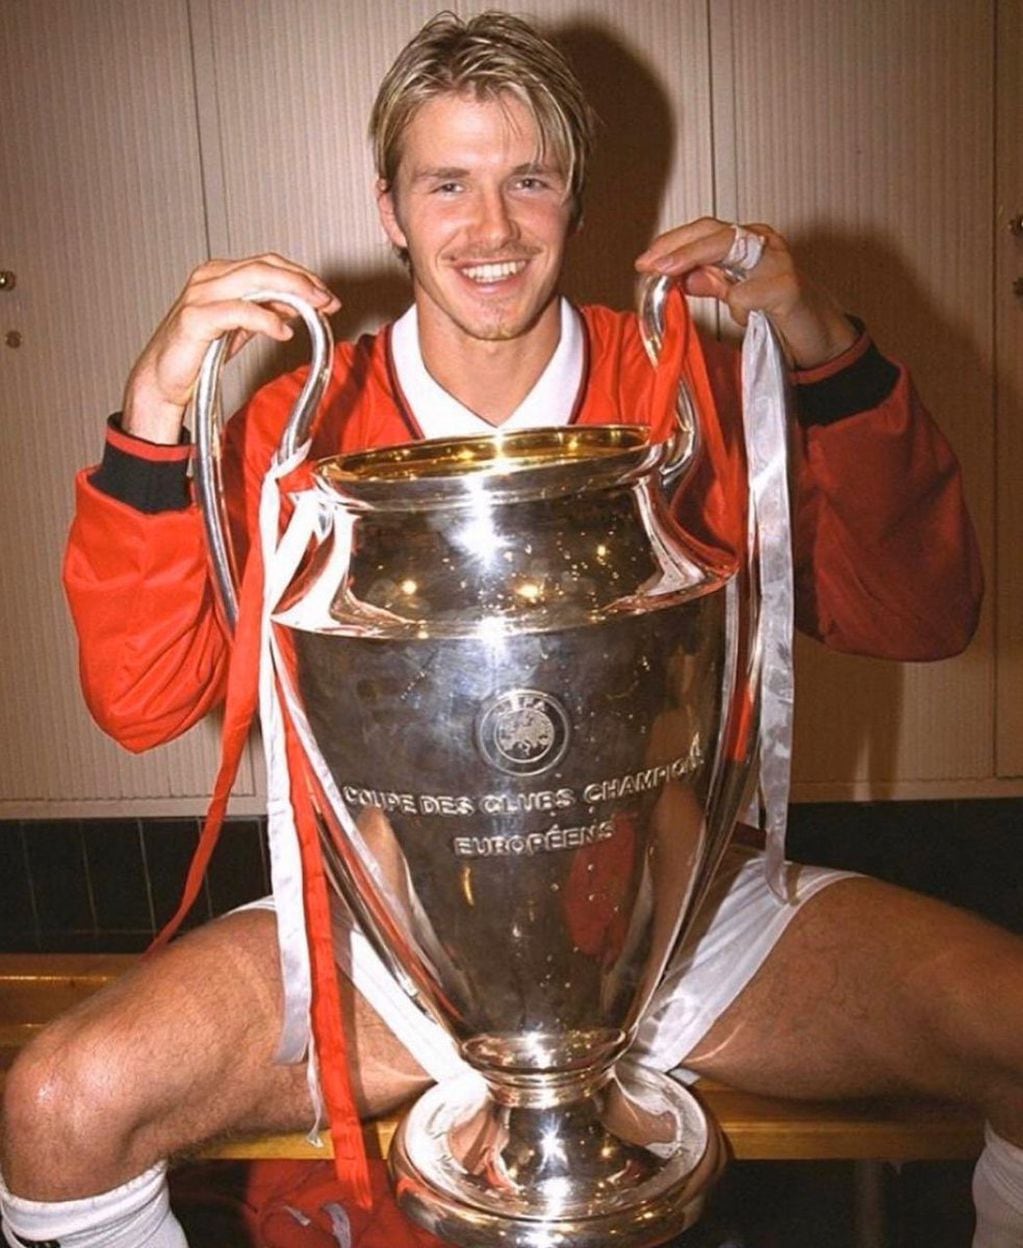 Tras el incidente en el Mundial, David Beckham coronó con una Champions la temporada 98/99